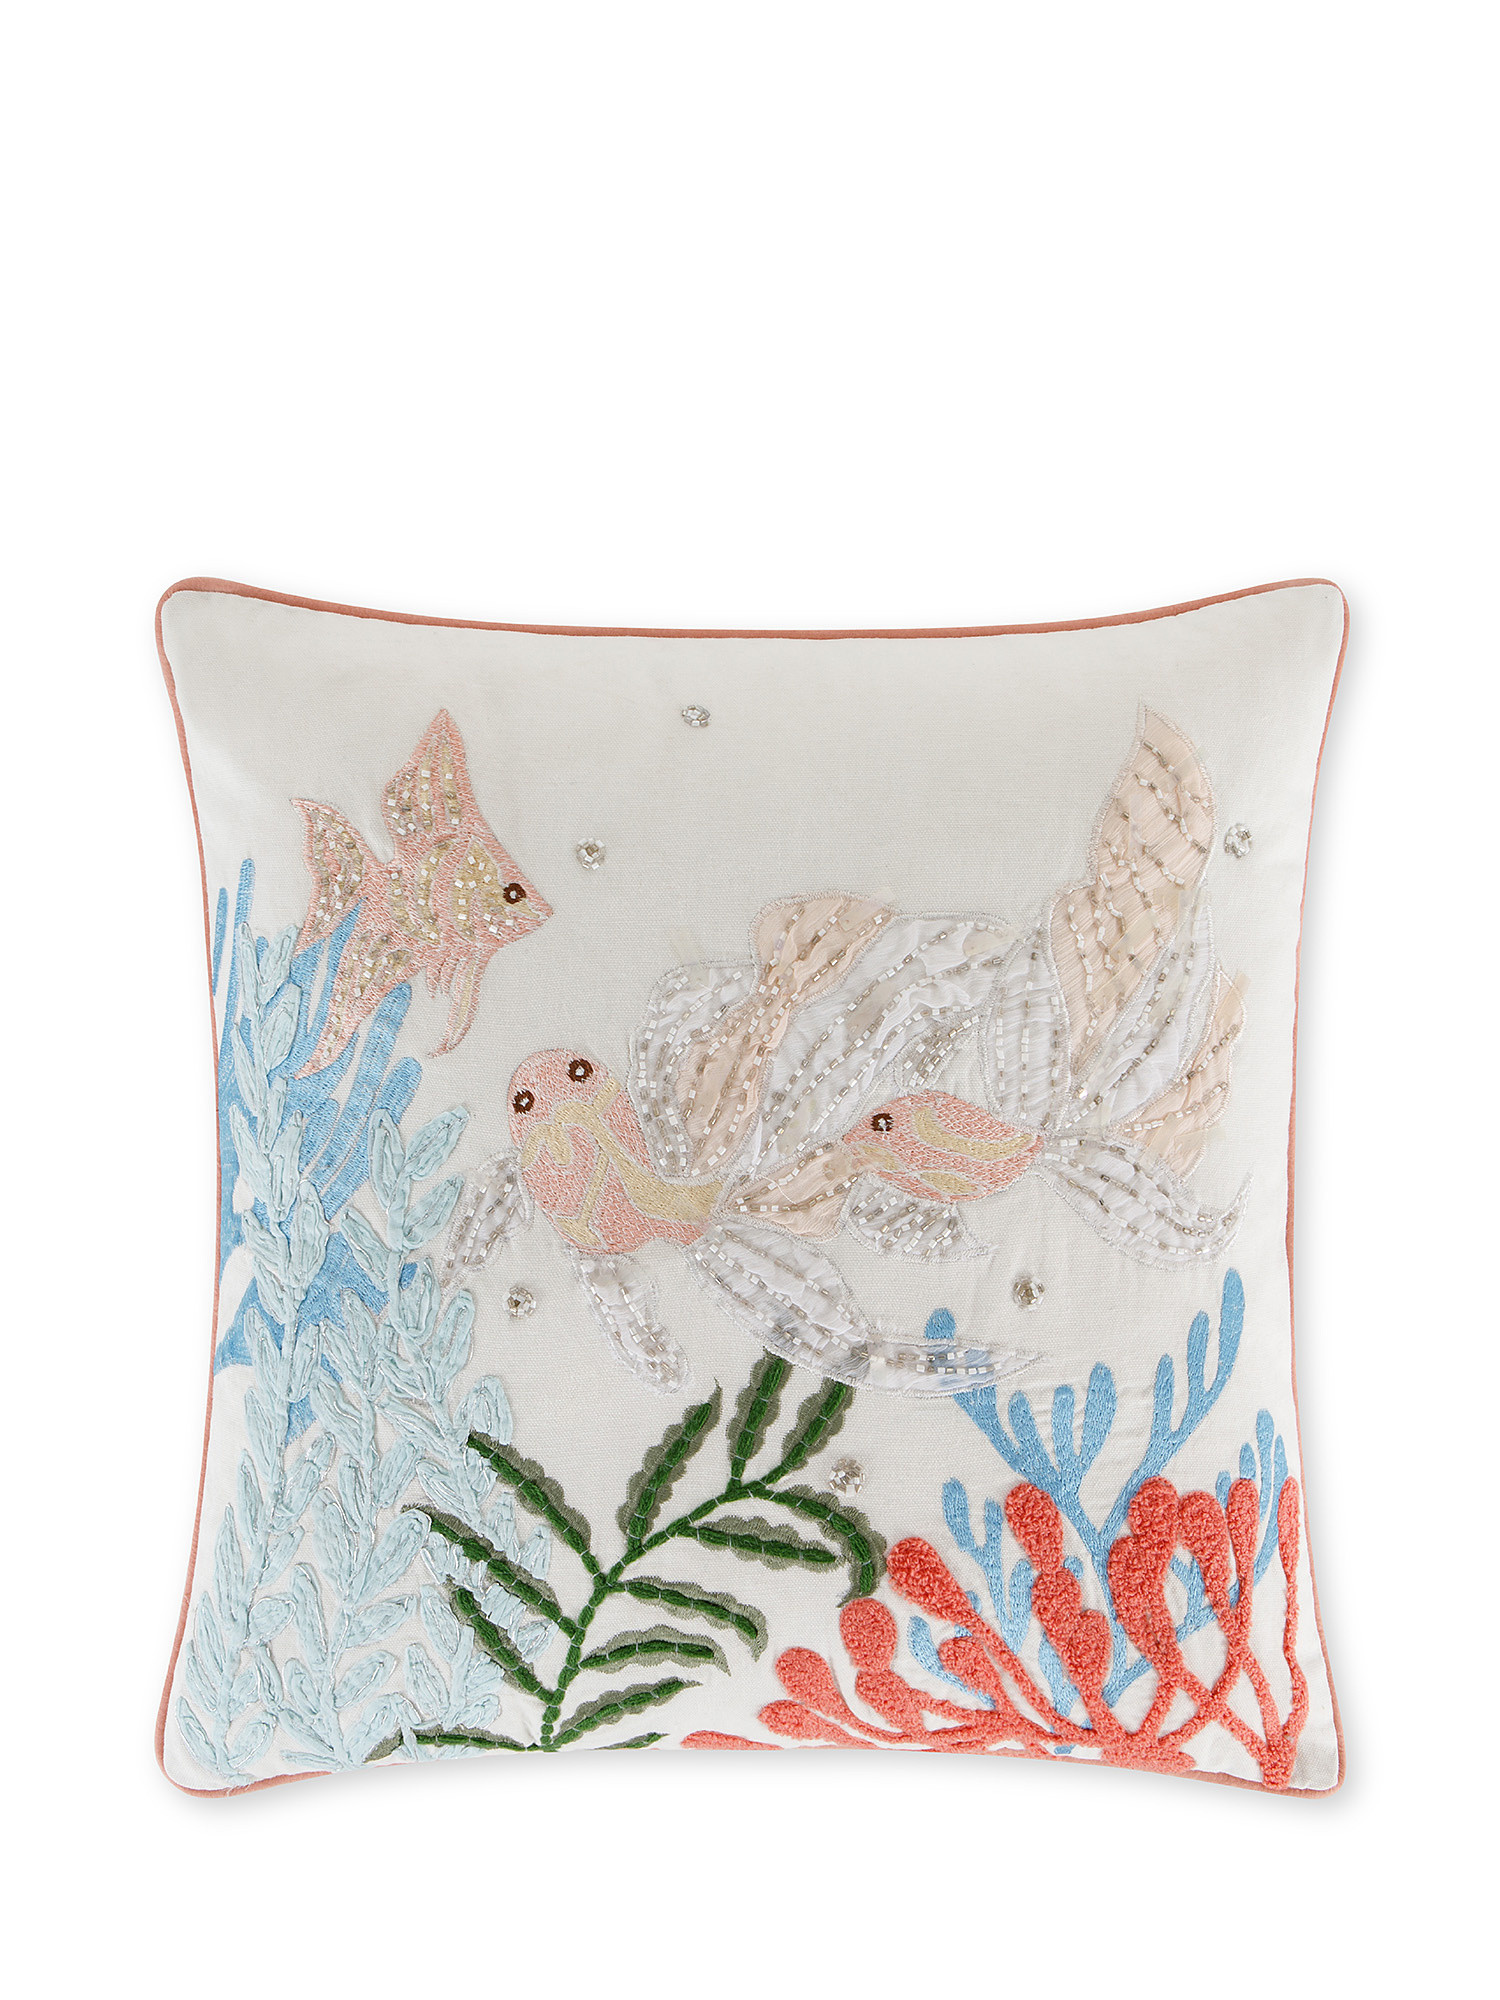 Marine embroidery cushion 45x45cm, White, large image number 0